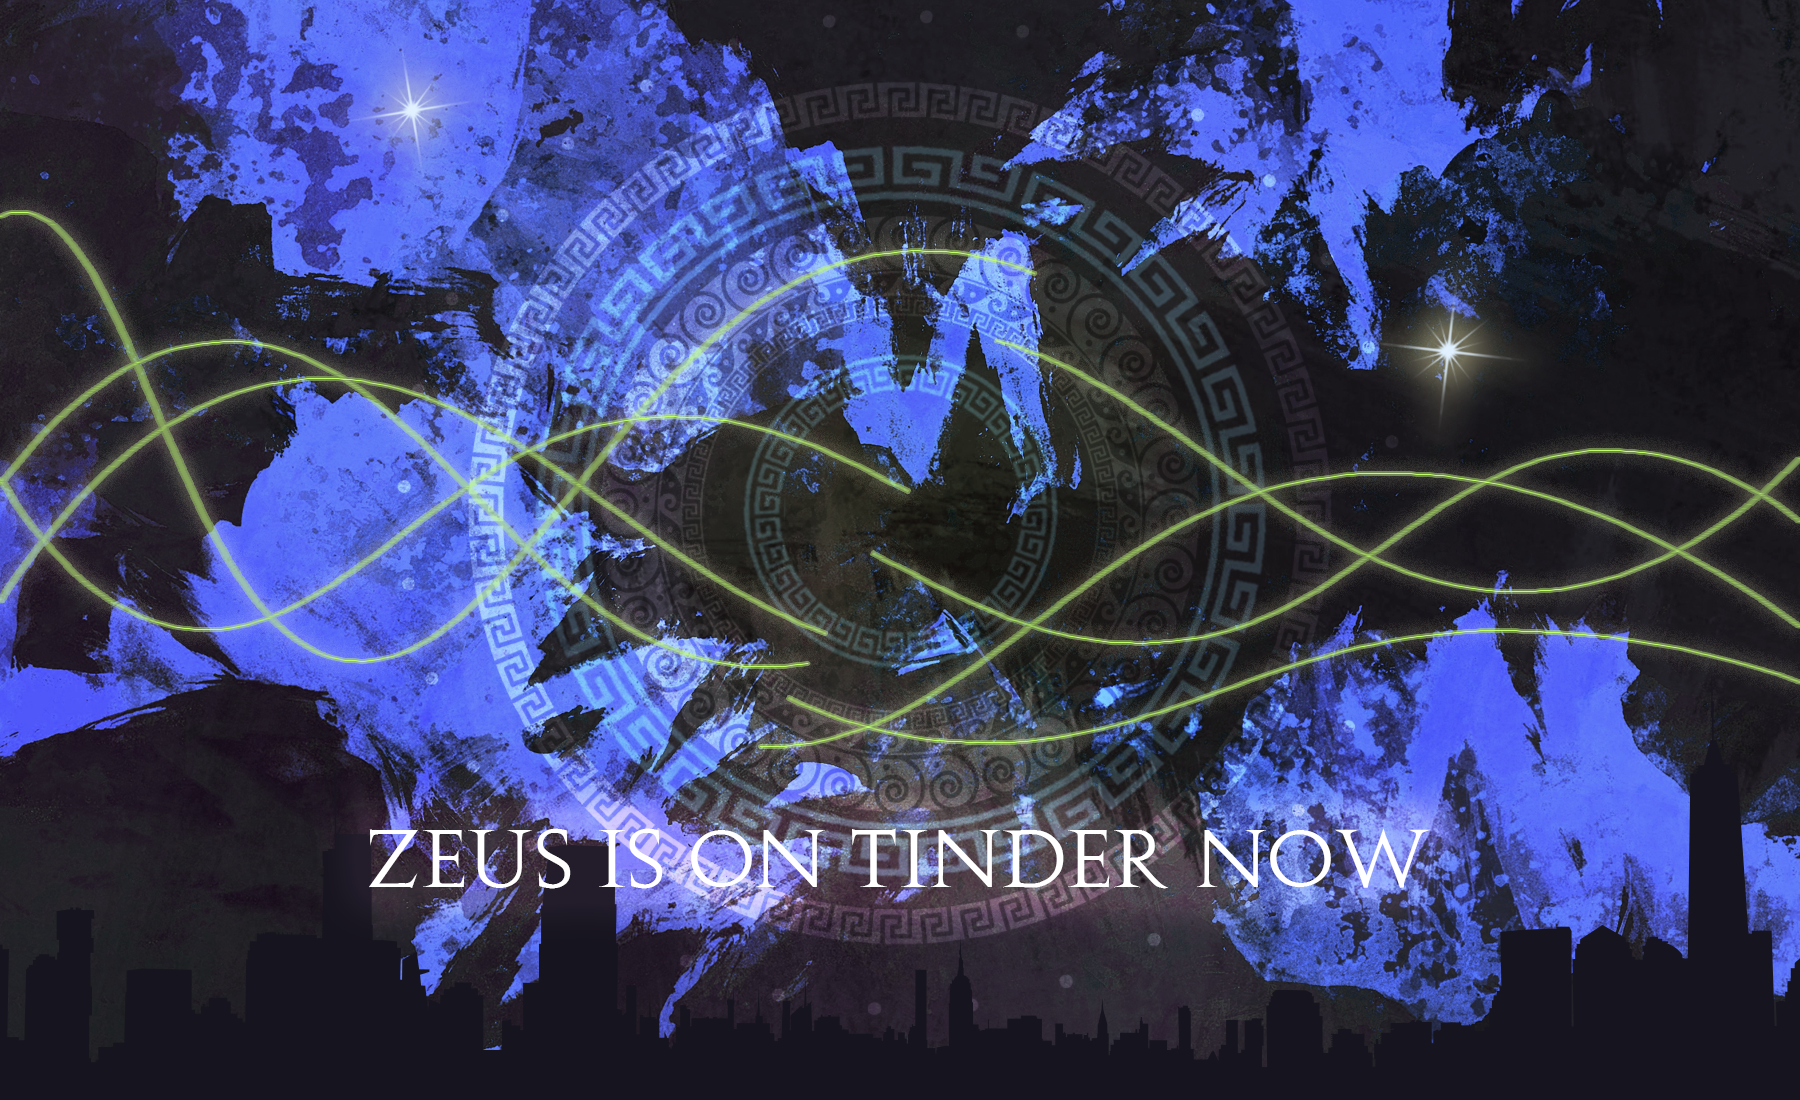 Zeus Is On Tinder Now